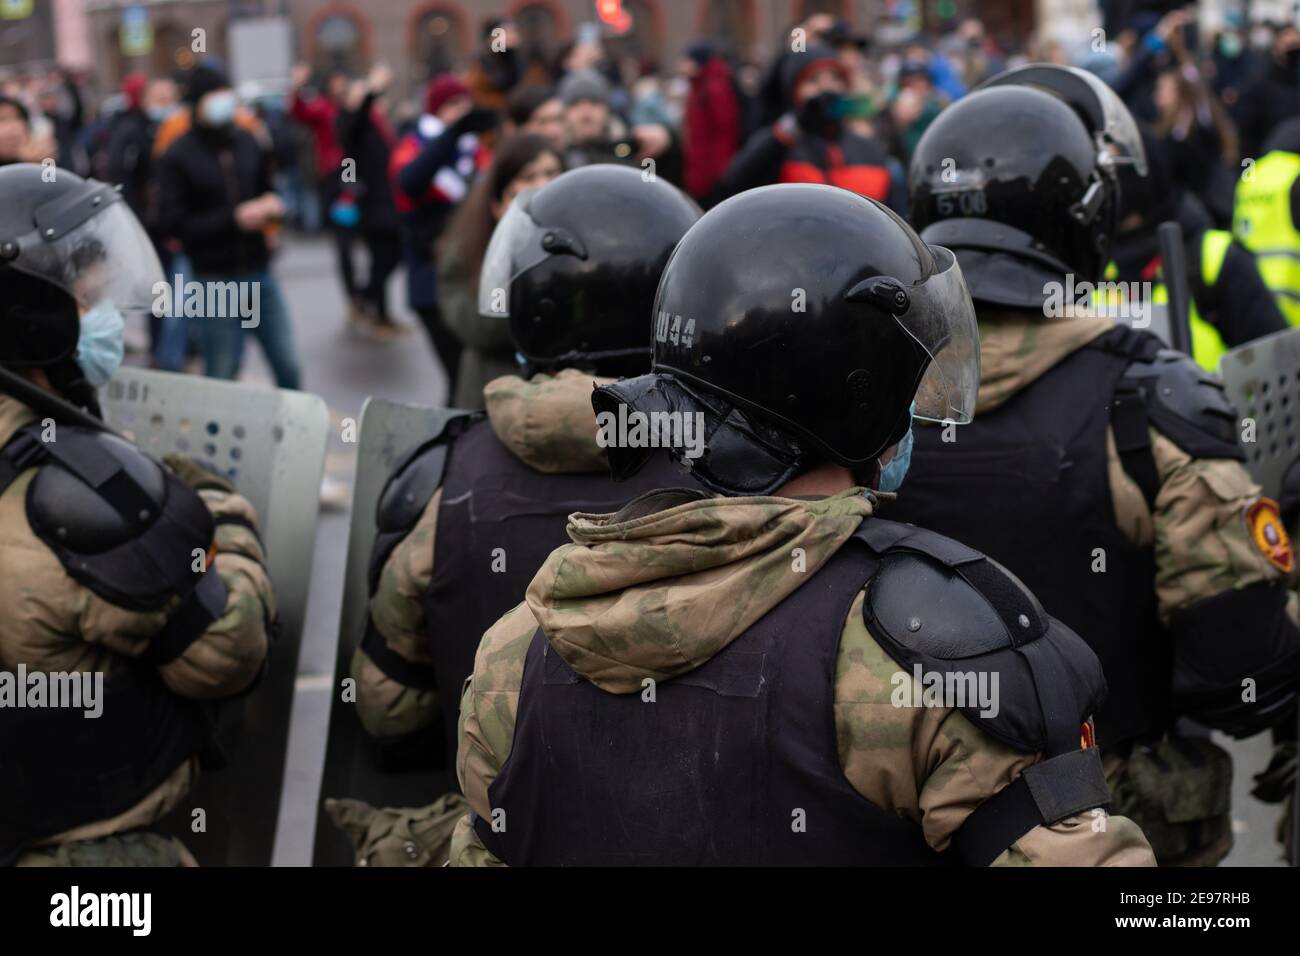 San Petersburgo, Rusia - 31 de enero de 2021: Policía y protesta pacífica, editorial ilustrativa Foto de stock